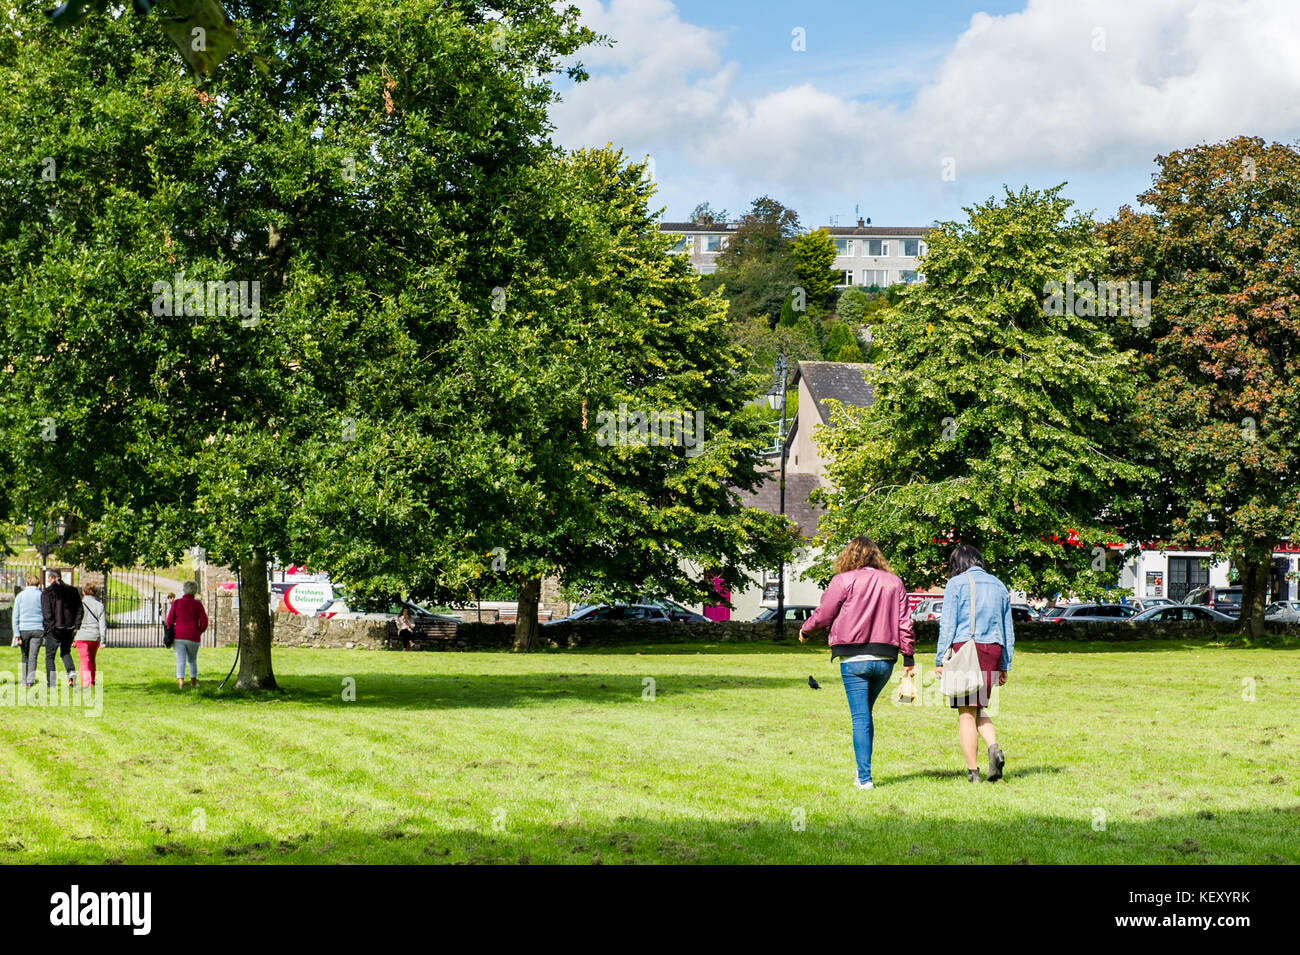 Blarney quadrato su una giornata soleggiata con gente che cammina, erba, alberi e copia dello spazio. Blarney, County Cork, Irlanda. Foto Stock